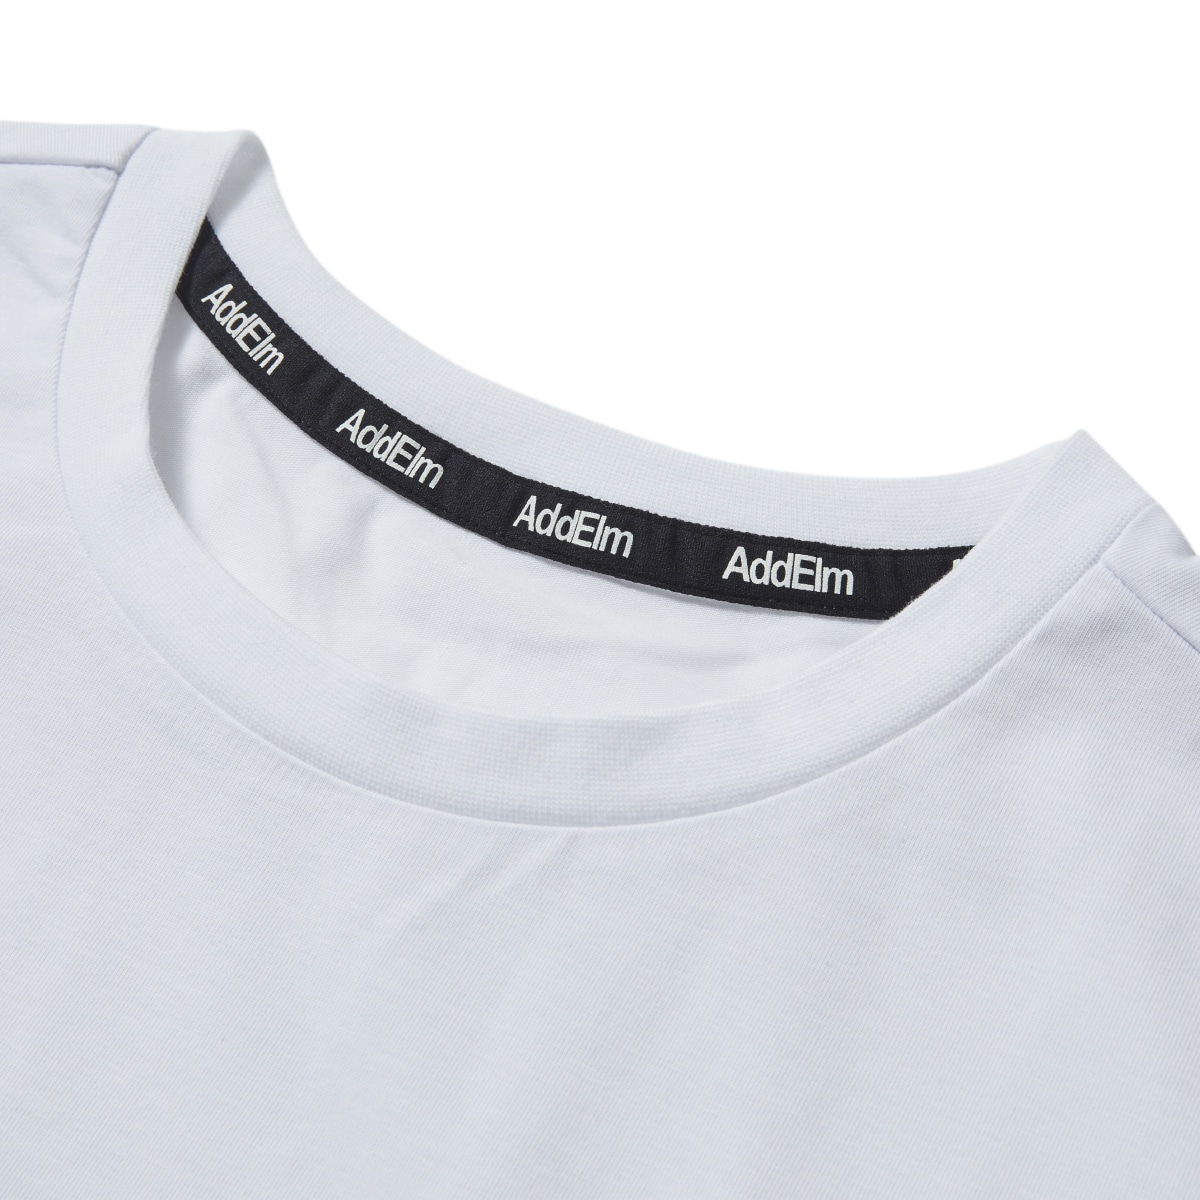 【add.03】PREMIUM TEE Tシャツ ユニセックス